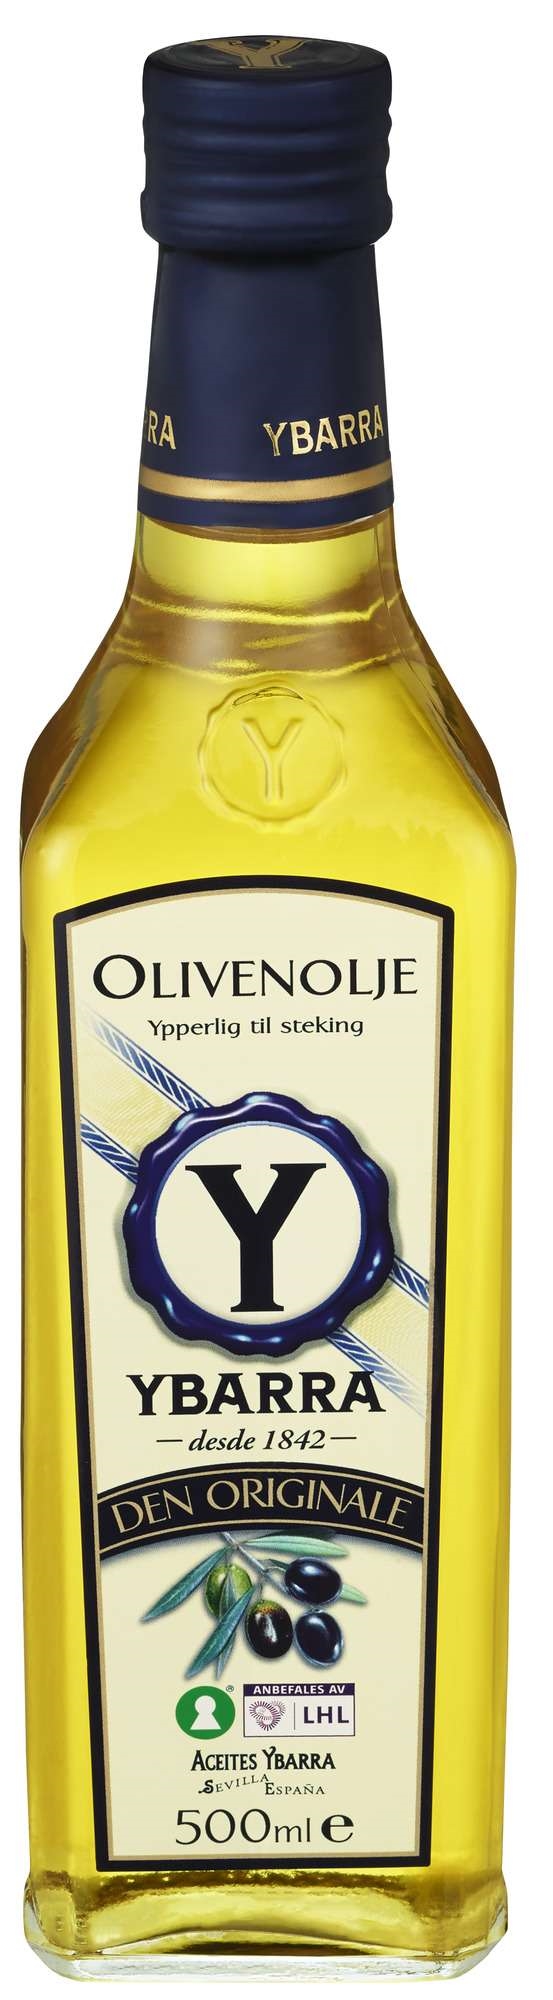 Olivenolje ybarra   0,5l